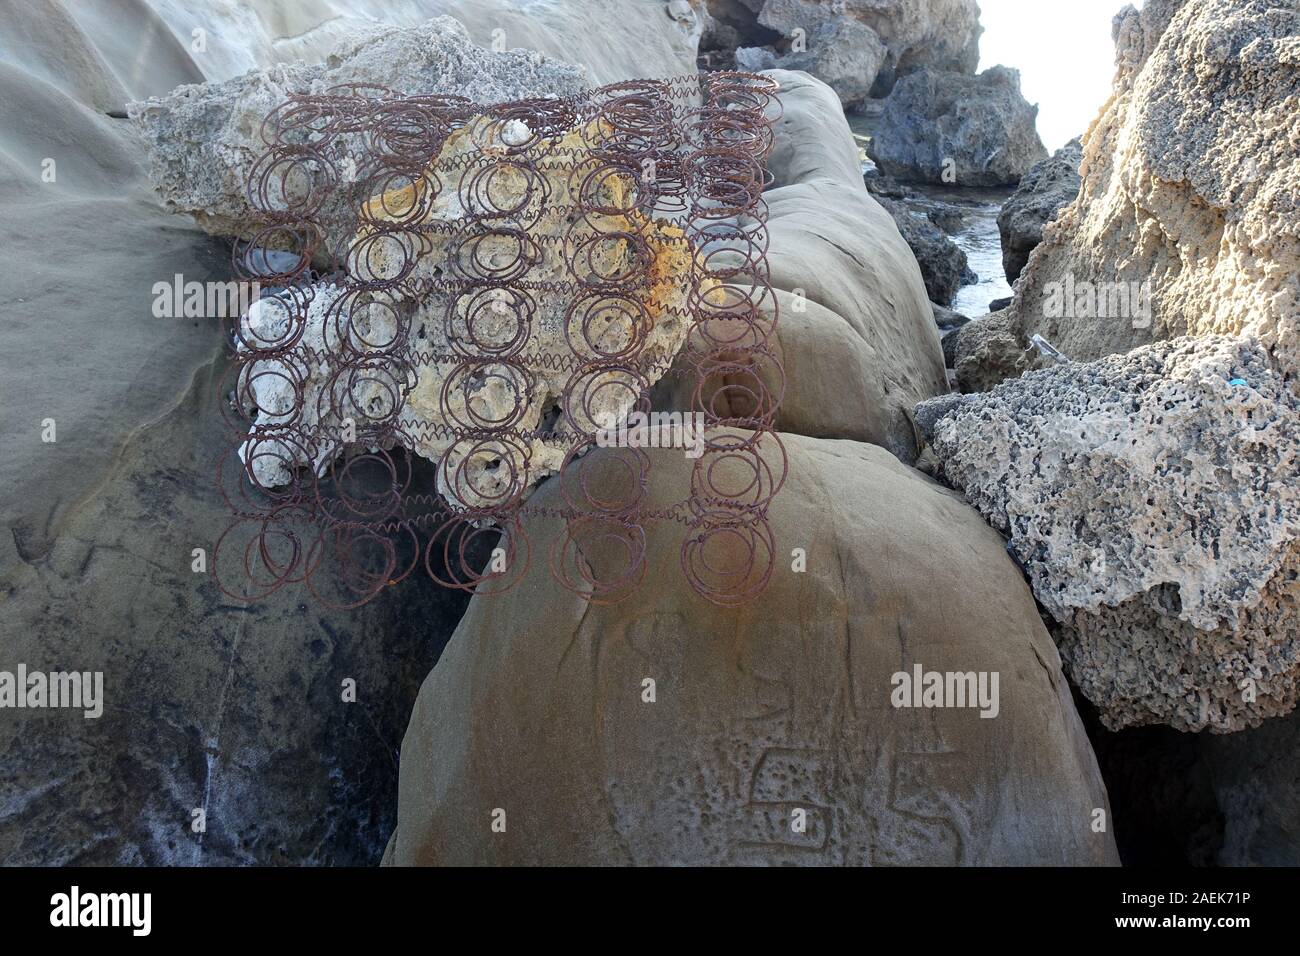 Un Müll einem menschenleeren Sandstrand, Kaplica, griechisch Davlos, Türkische Republik,Nordzypern Foto Stock